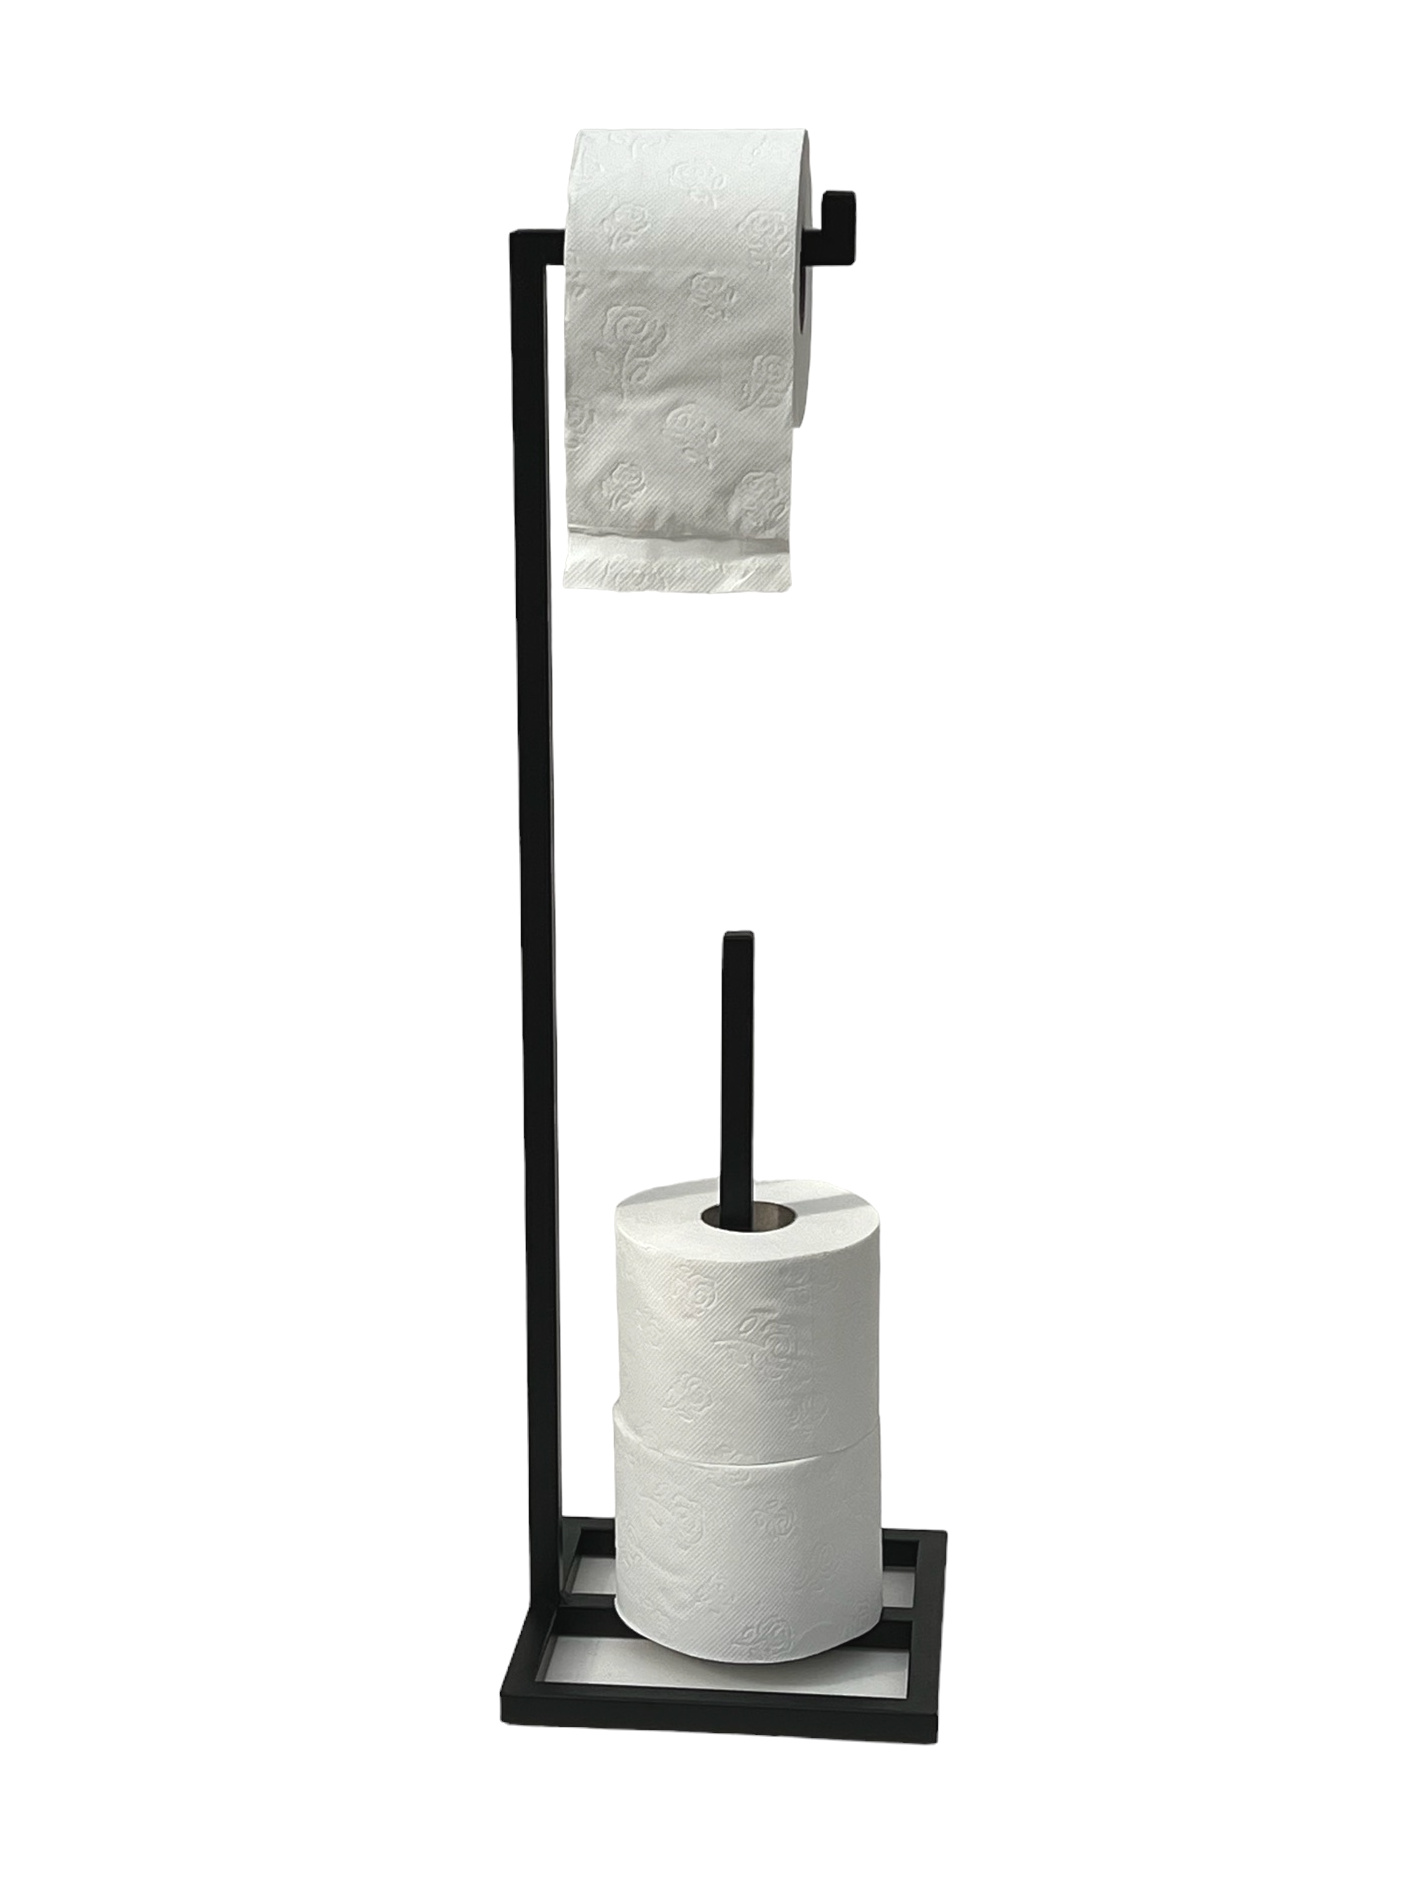 Stehend WC 96459 Toilettenpapierhalter Schwarz Metall Papierhalter Gäste Rollenhalter-DanDiBo DanDiBo Ersatzrollenhalter Klopapierhalter Ständer